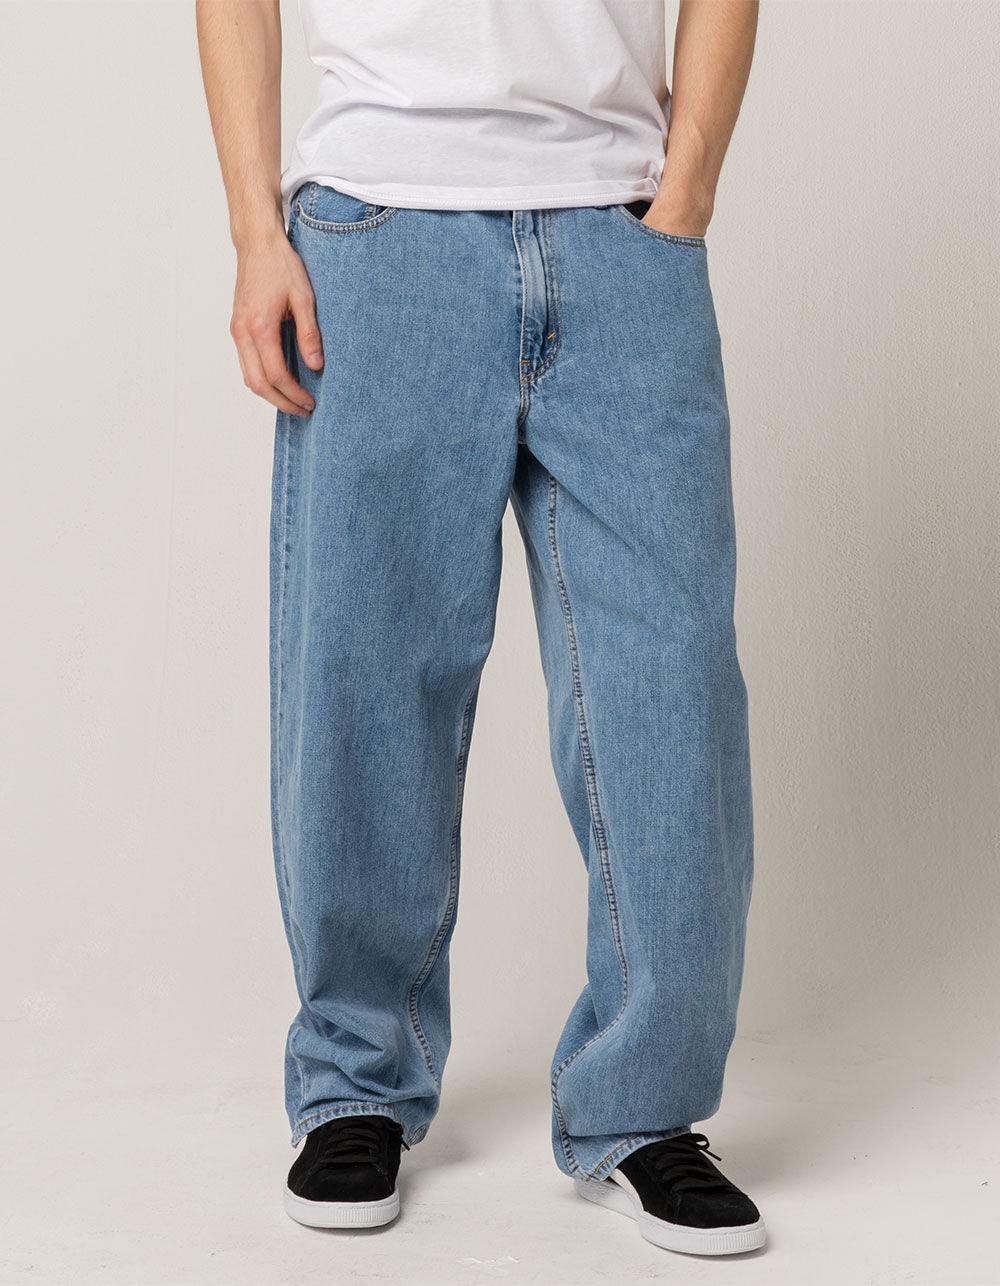 jeans baggy levis